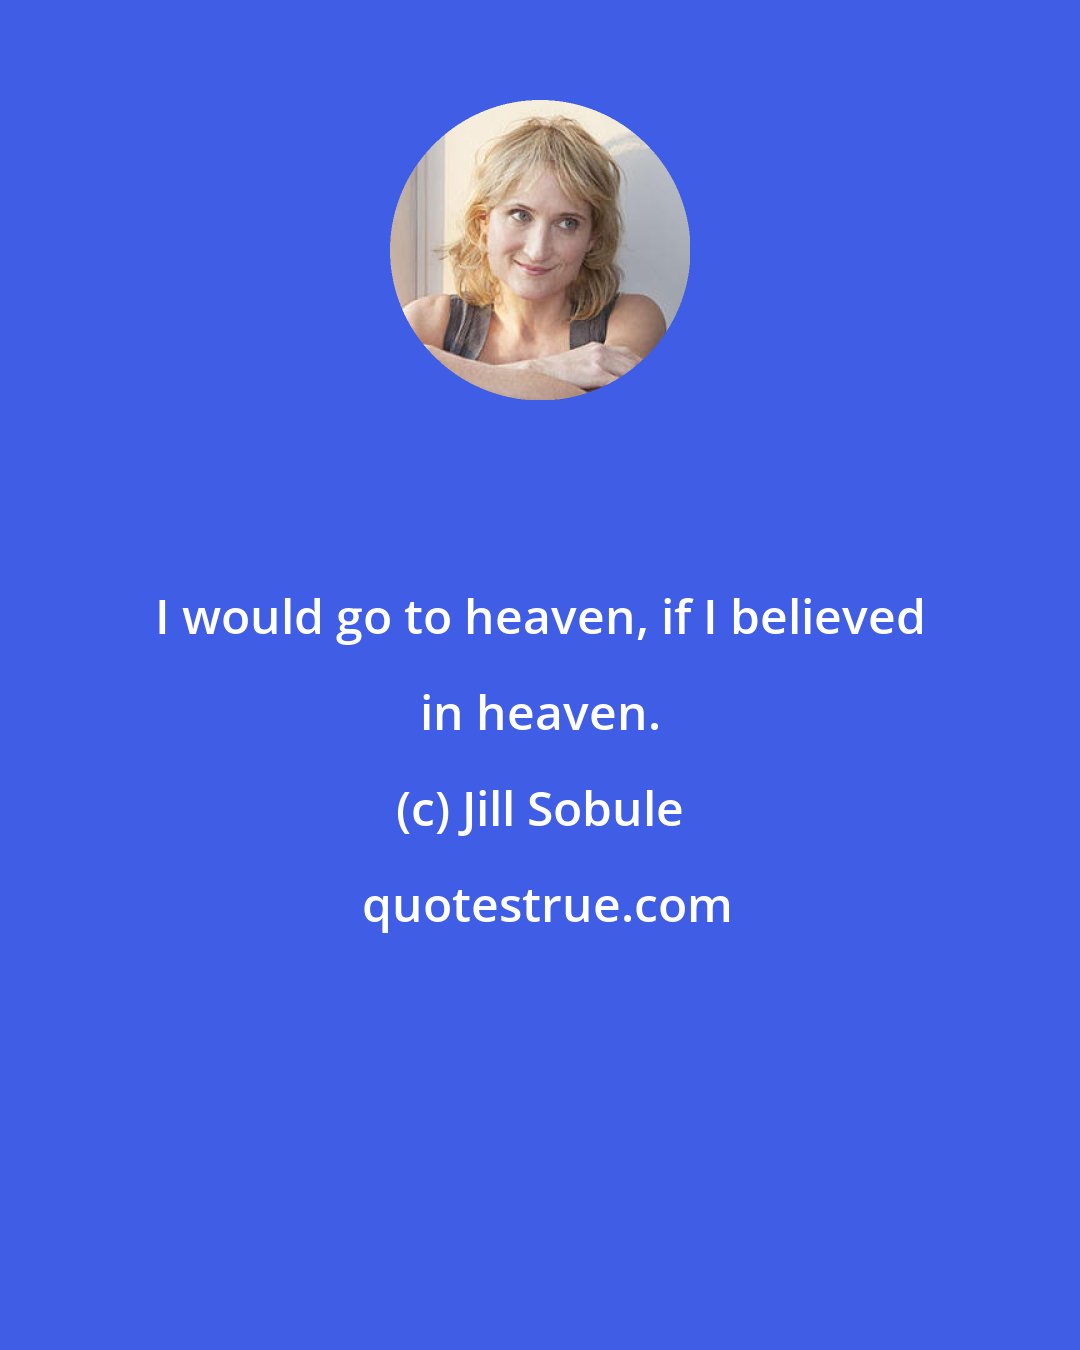 Jill Sobule: I would go to heaven, if I believed in heaven.